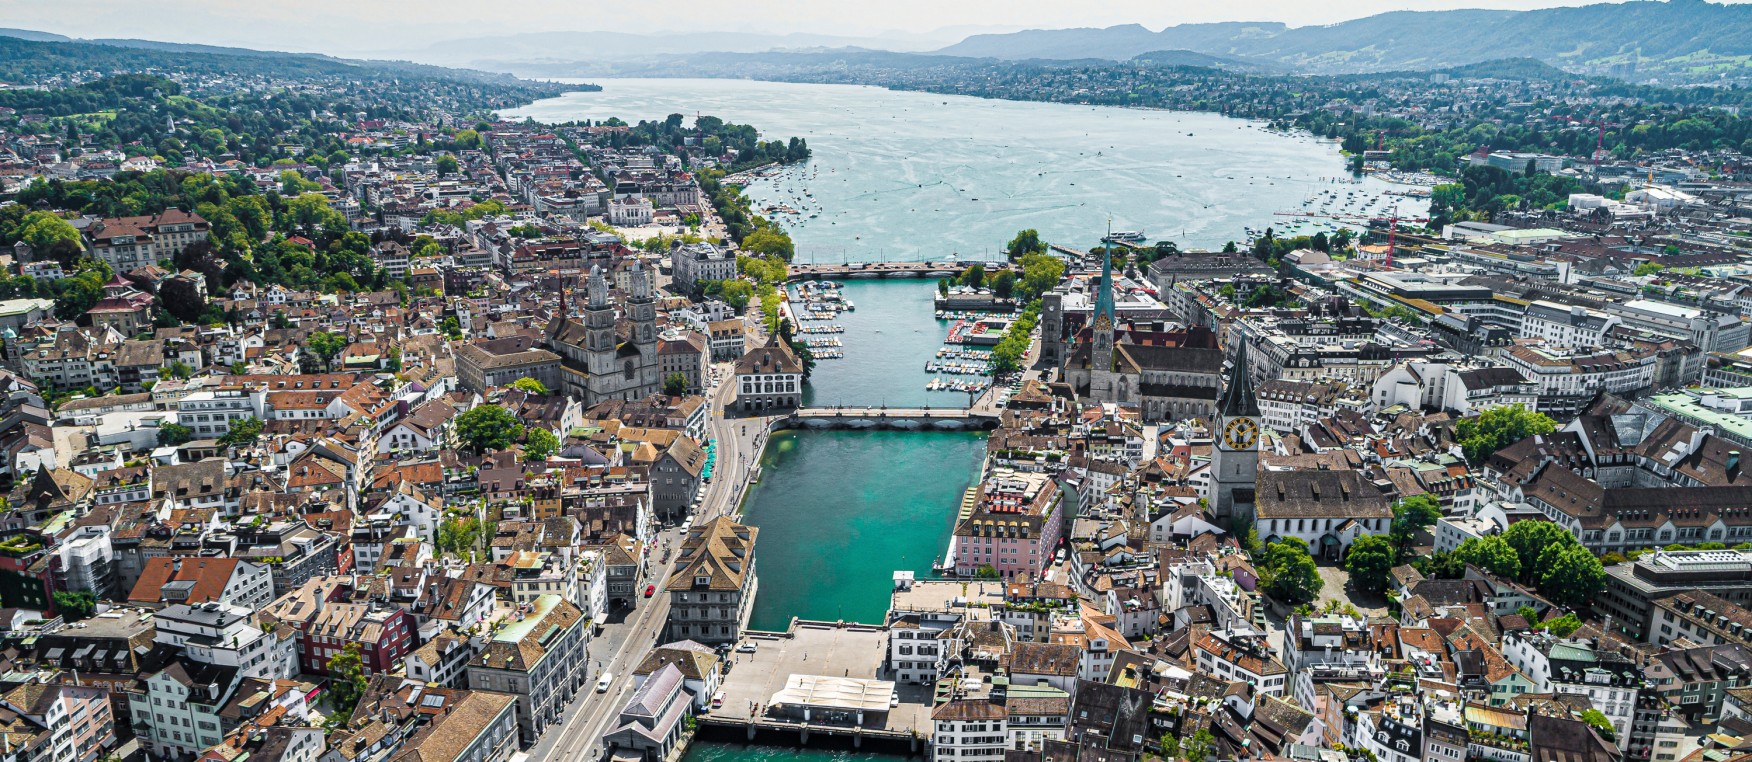 Zürich soll lebenswert bleiben und klimaneutral werden